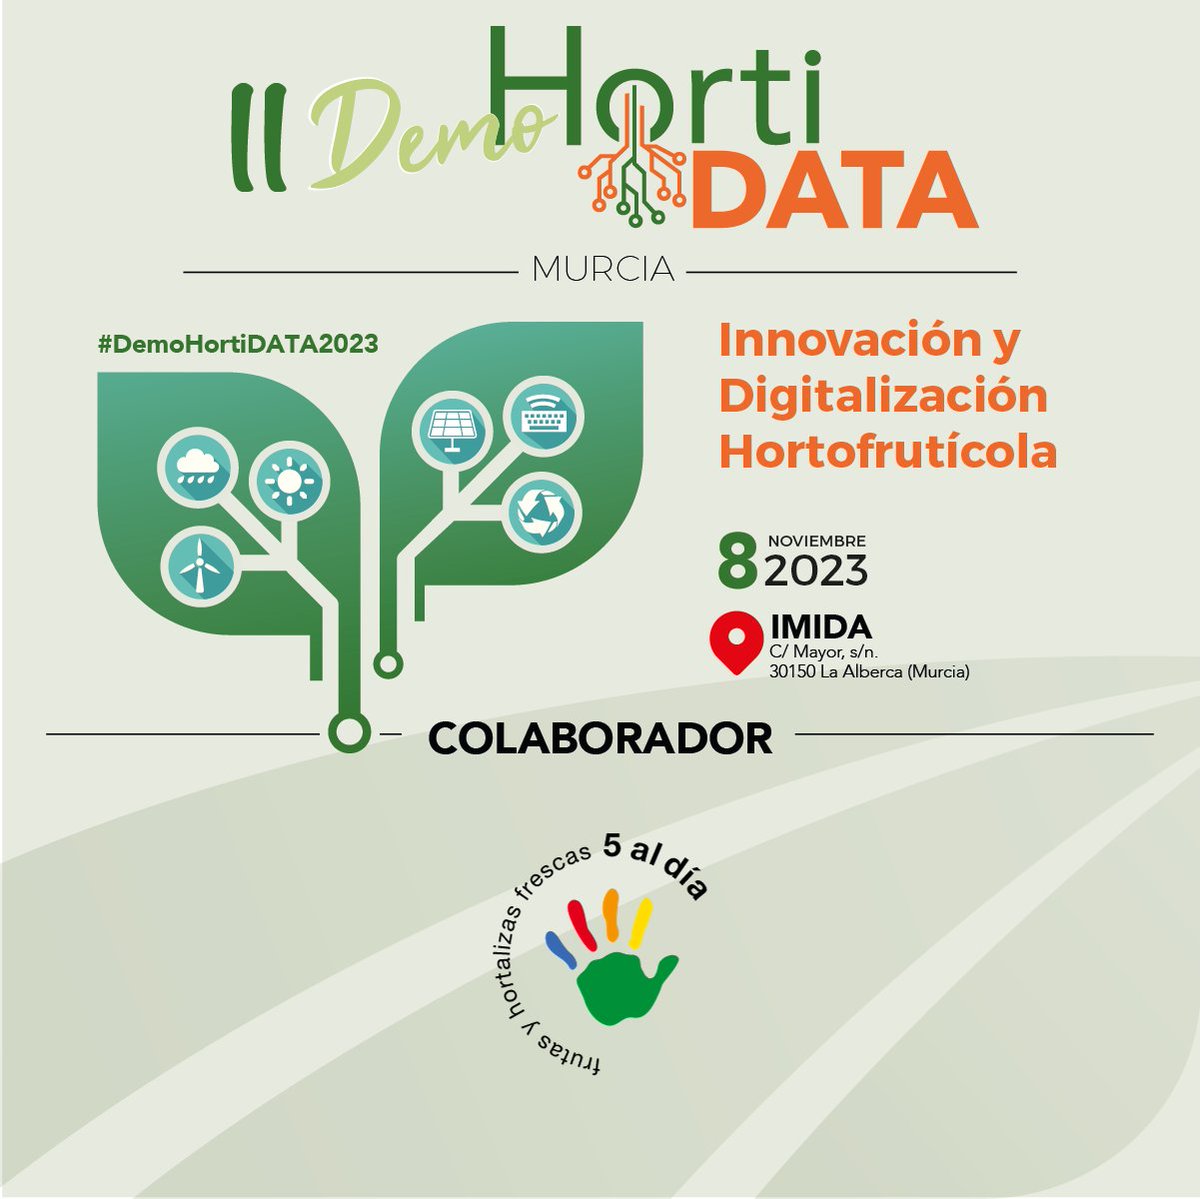 #5aldía colabora en el II Demo HortiDATA 2023
@HortiData promovido por @SieteAgromarket poniendo en valor la innovación y digitalización en la actividad #hortofutícola
📆 8/10/23
⏰ 9:00 h
📍 Alberca Las Torres, Murcia
Inscripciones 👉bit.ly/3rYkhgC

#DemoHortiDATA2023